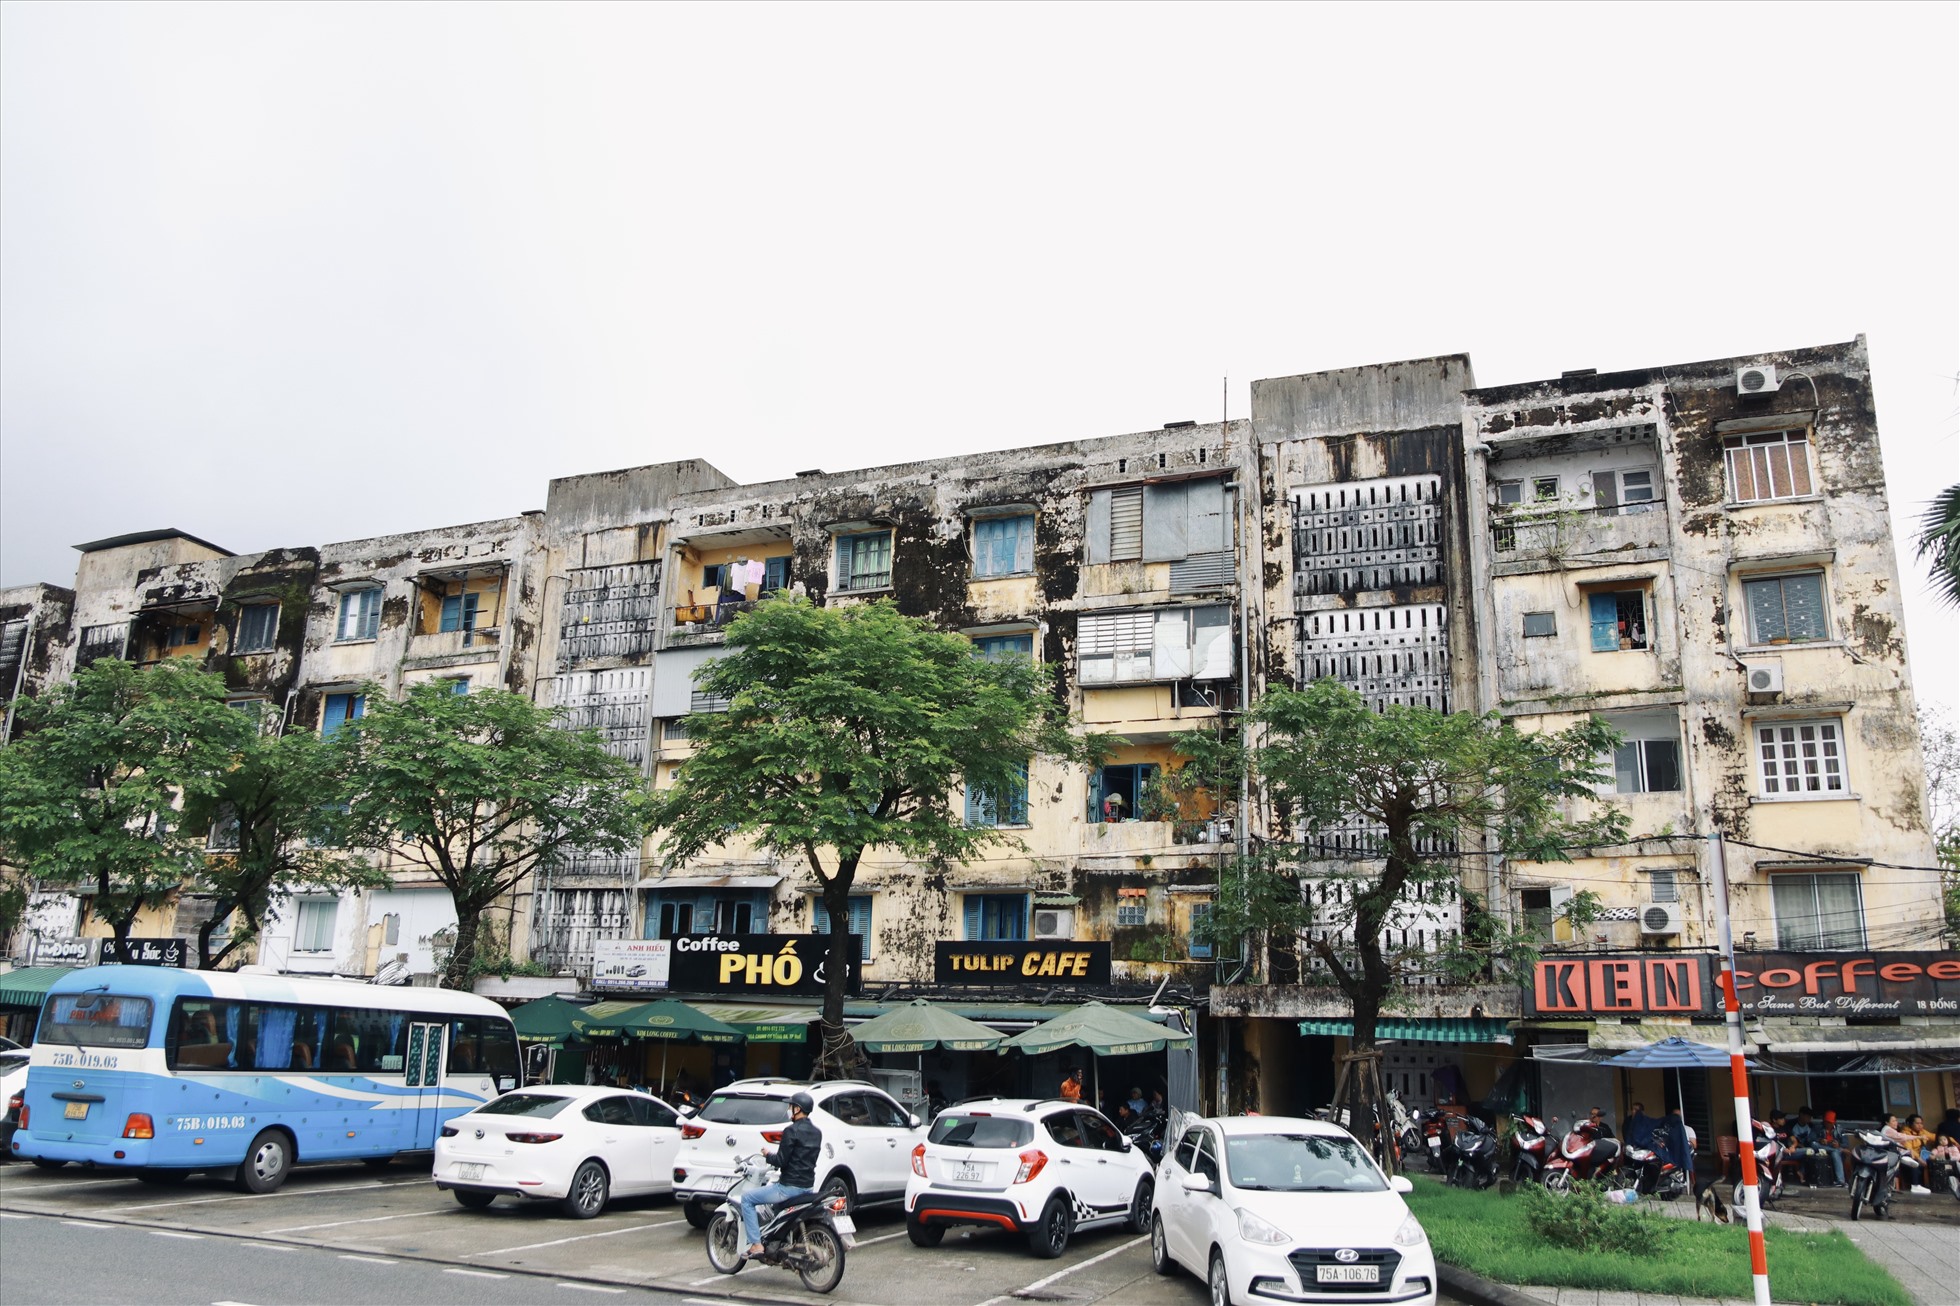 Hiện nay, khu chung cư Đống Đa (phường Phú Nhuận, TP. Huế, tỉnh Thừa Thiên Huế) đang xuống cấp nghiêm trọng, chất lượng các dãy nhà không đảm bảo vì thời gian sử dụng đã quá lâu khiến cuộc sống của nhiều hộ dân bị ảnh hưởng. Xây mới chung cư là phương án đã được tính đến.